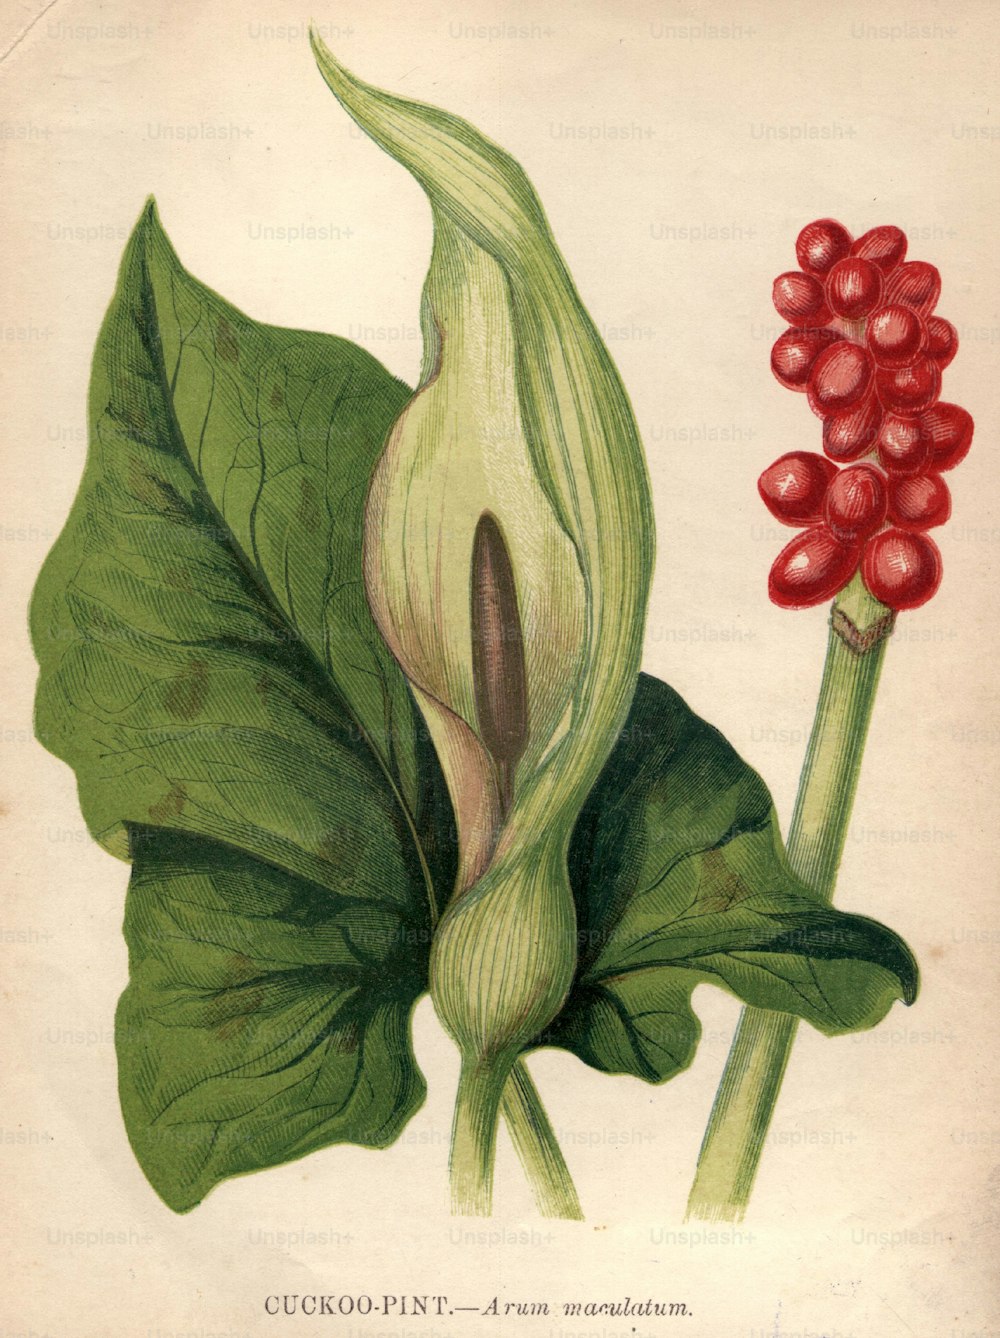 vers 1900 : Arum maculatum, ou pinte de coucou, également connu sous le nom de merle de réveil et lords-and-dames, avec ses baies rouges très toxiques.  (Photo de Hulton Archive/Getty Images)